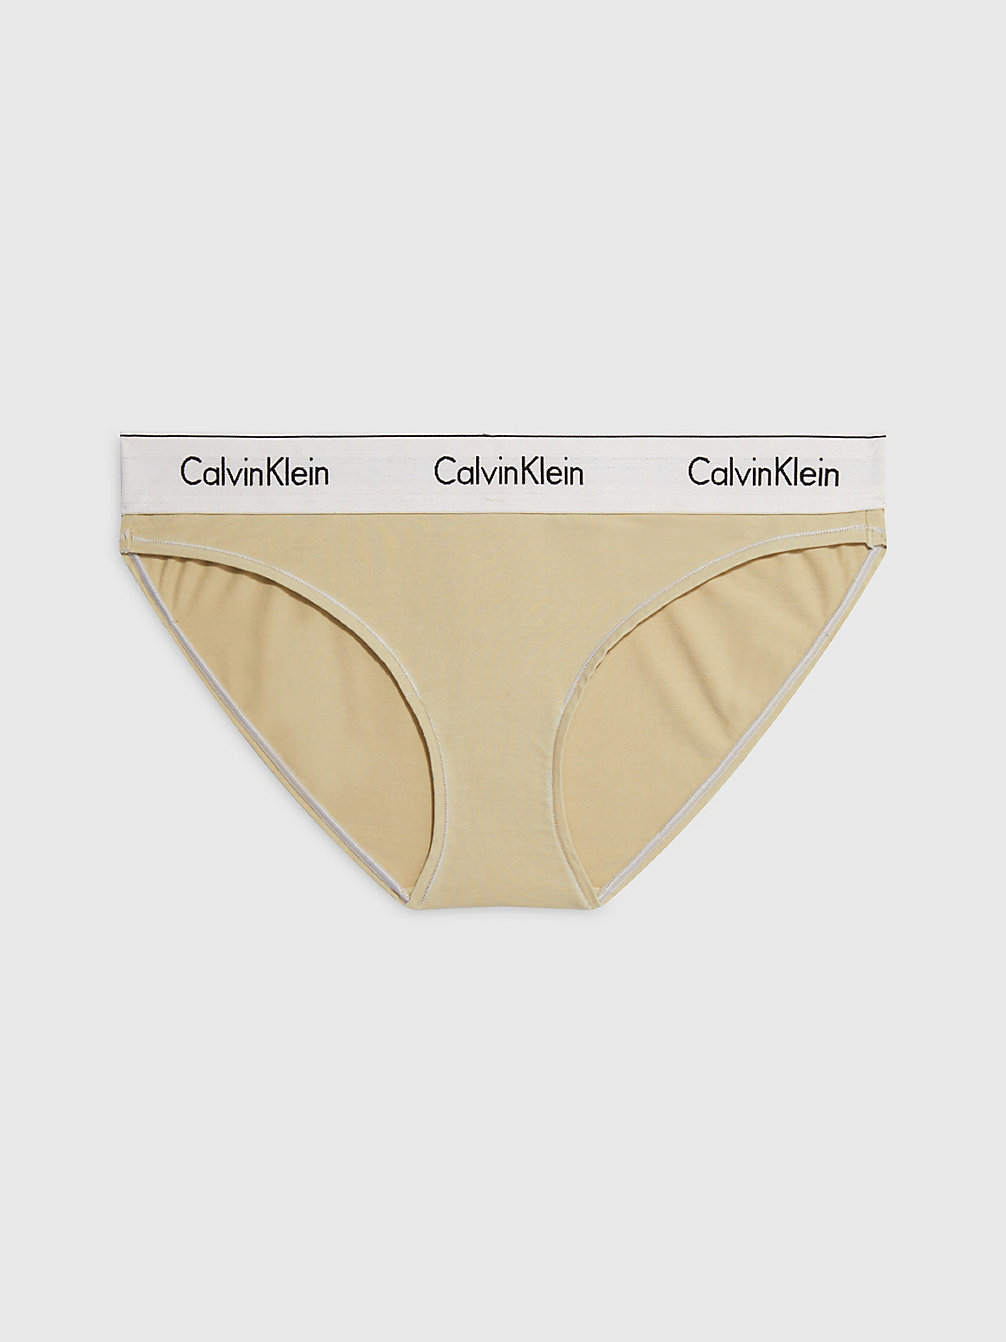 SHELL > Slips - Modern Cotton > undefined Damen - Calvin Klein